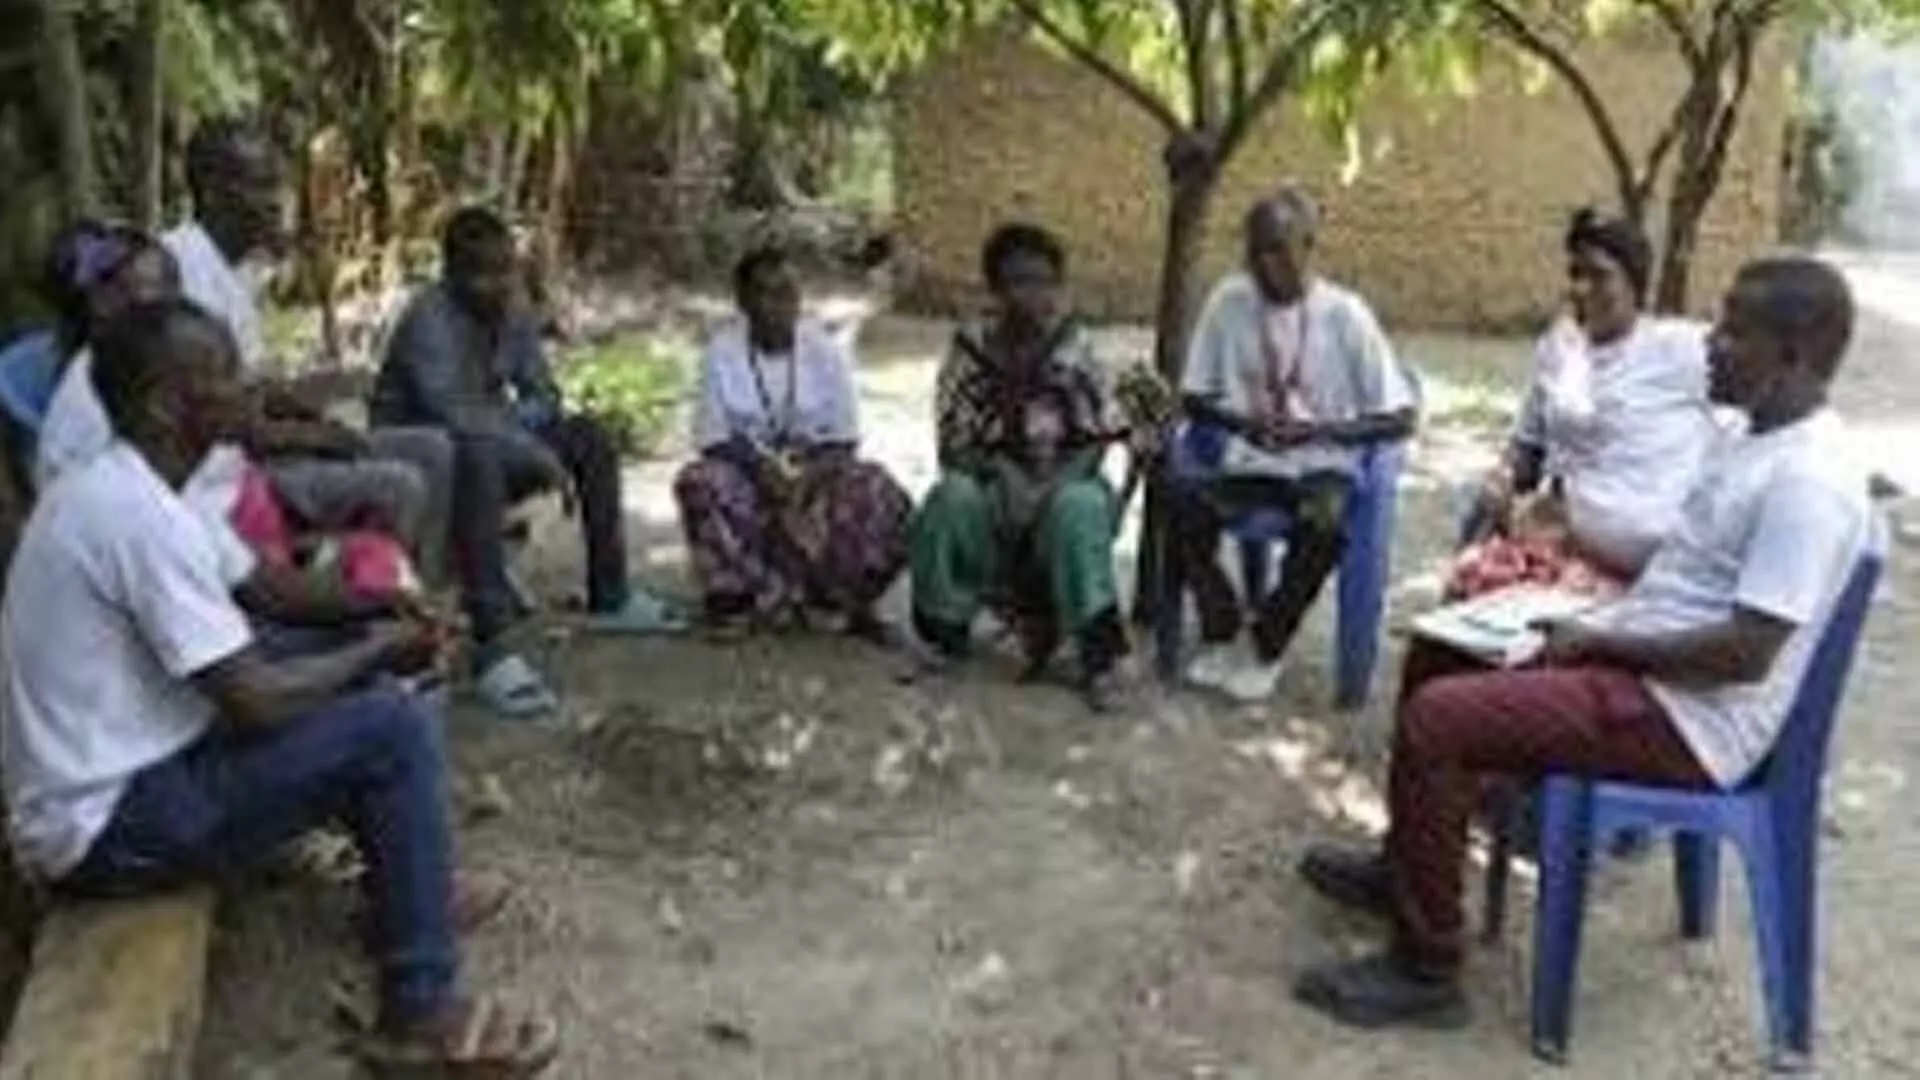 Ugandan का समूह घरेलू हिंसा से निपटने के लिए प्रतिज्ञाएँ लेकर आया